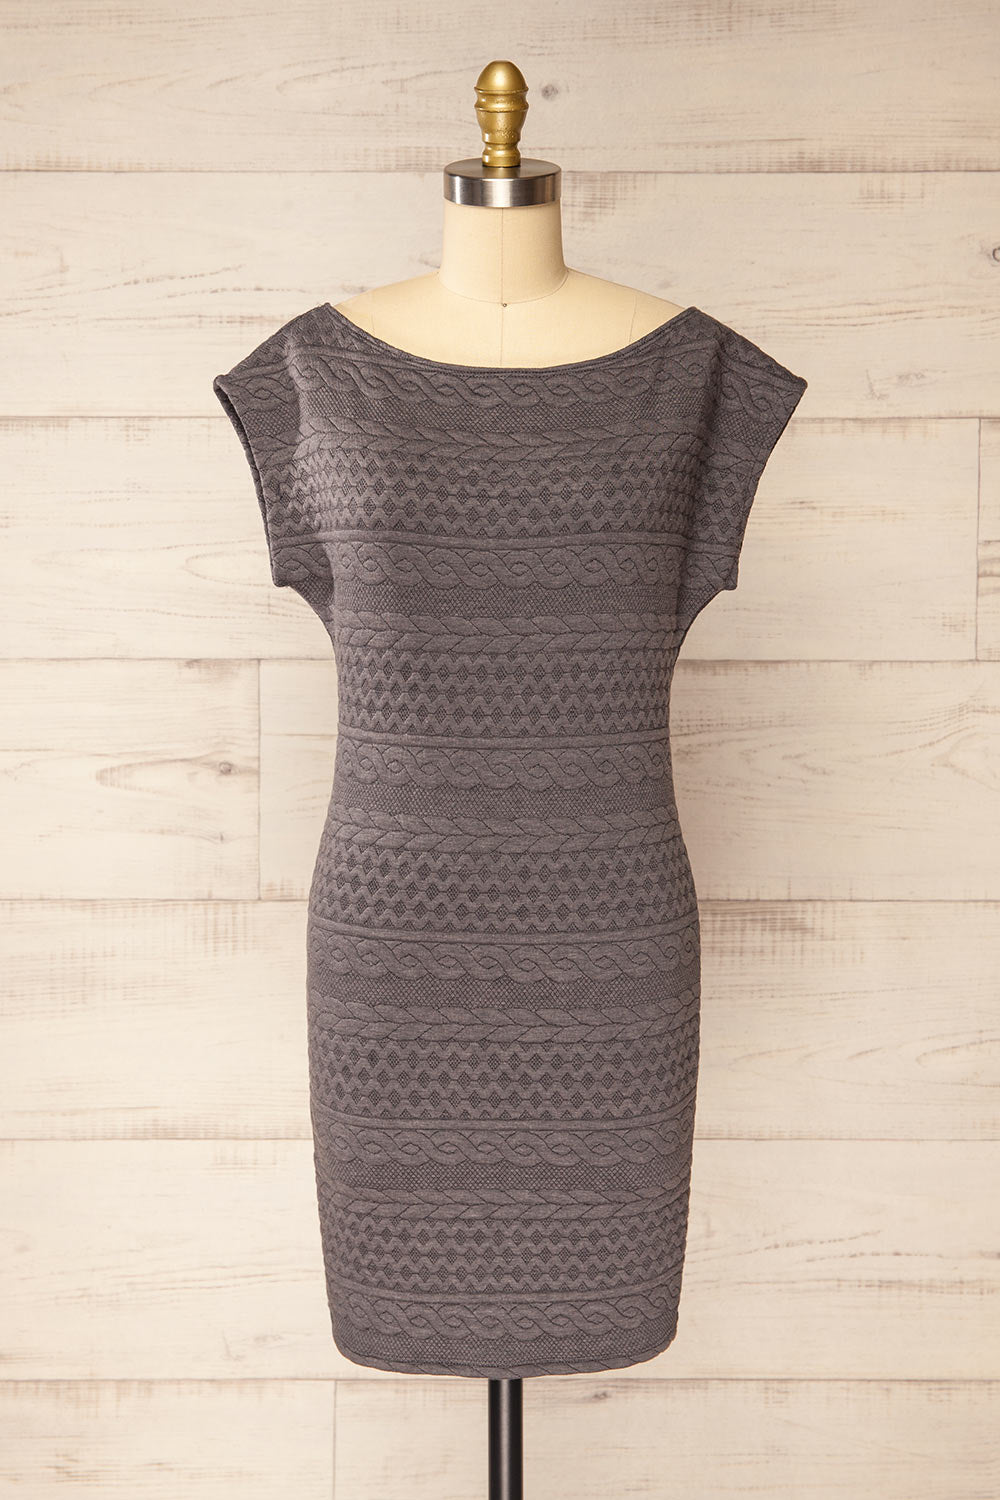 Eva-Marie Grey Cable Pattern Short Dress | La petite garçonne front view